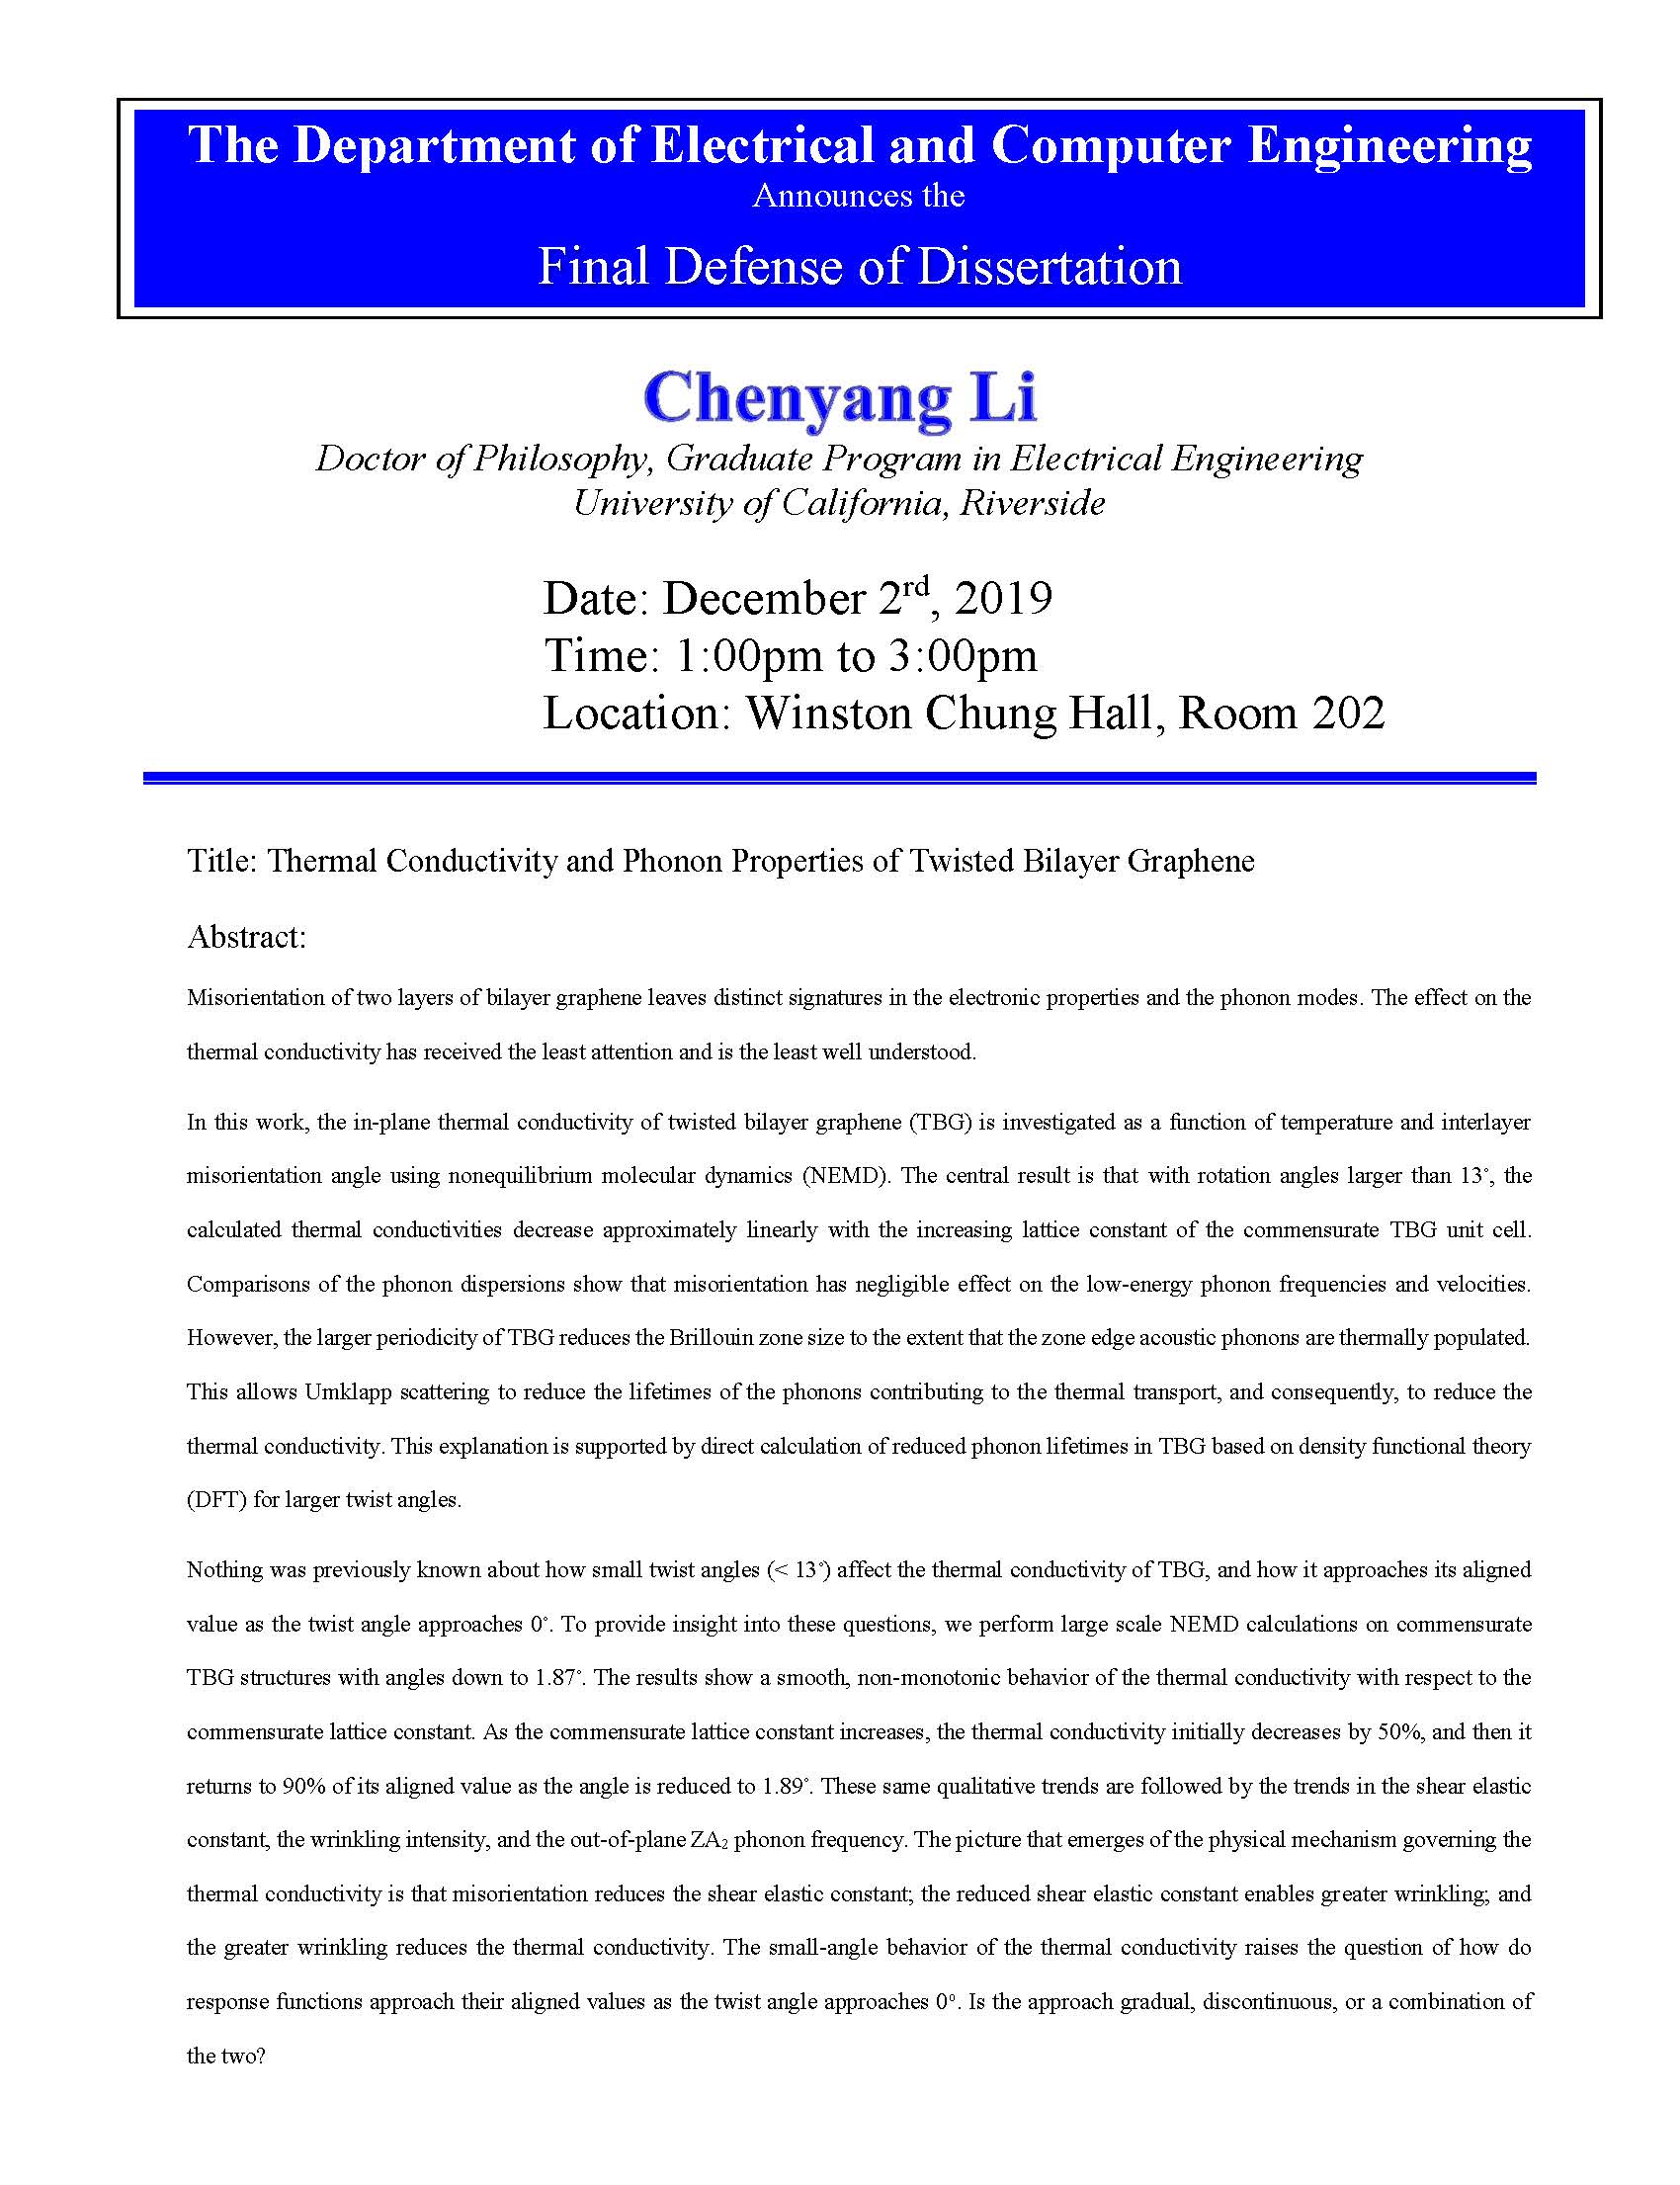 LI, Chenyang Dissertation Flyer